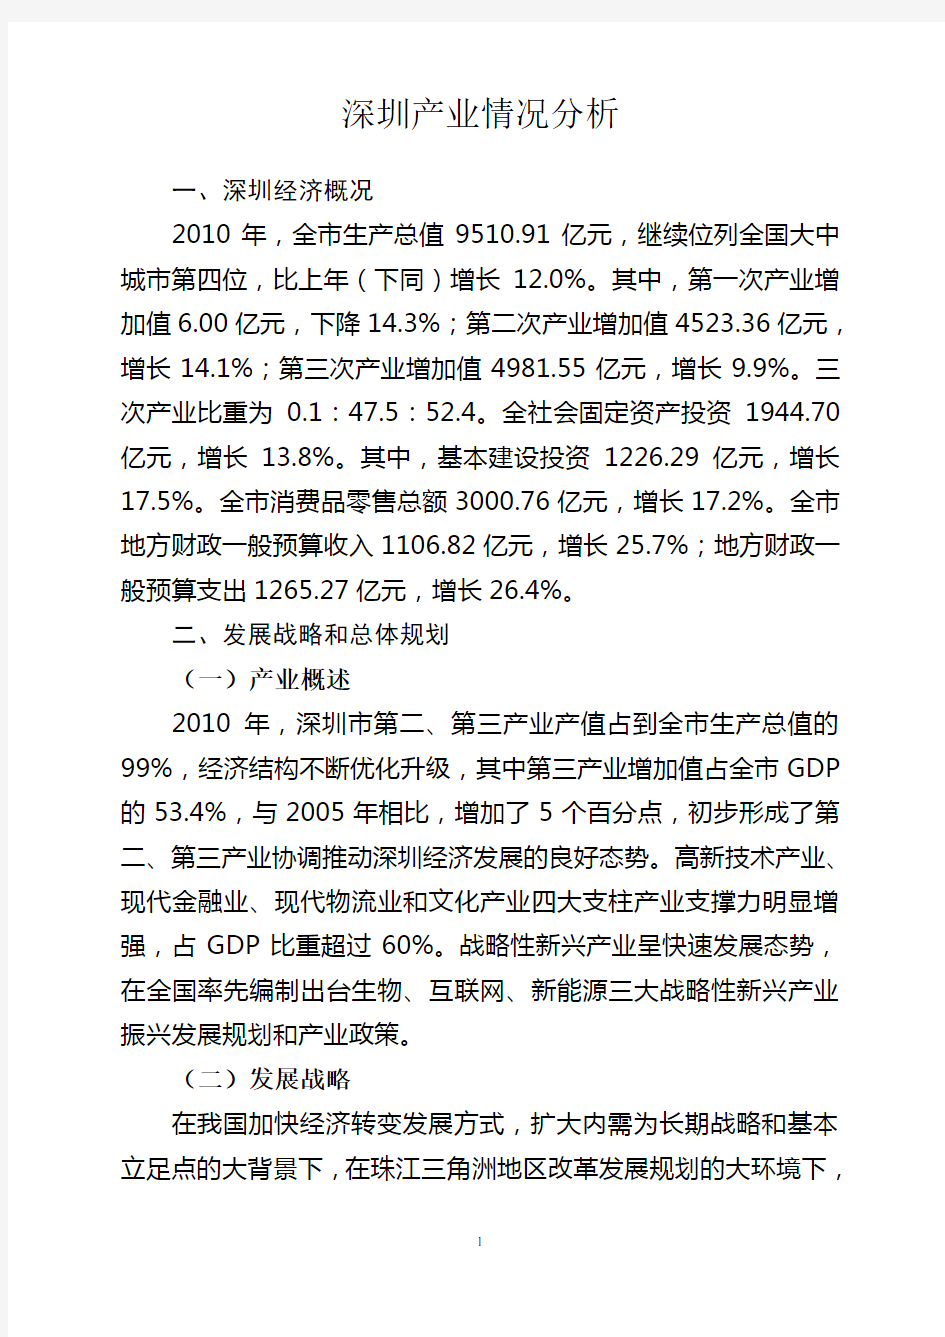 深圳产业情况分析报告(终稿)